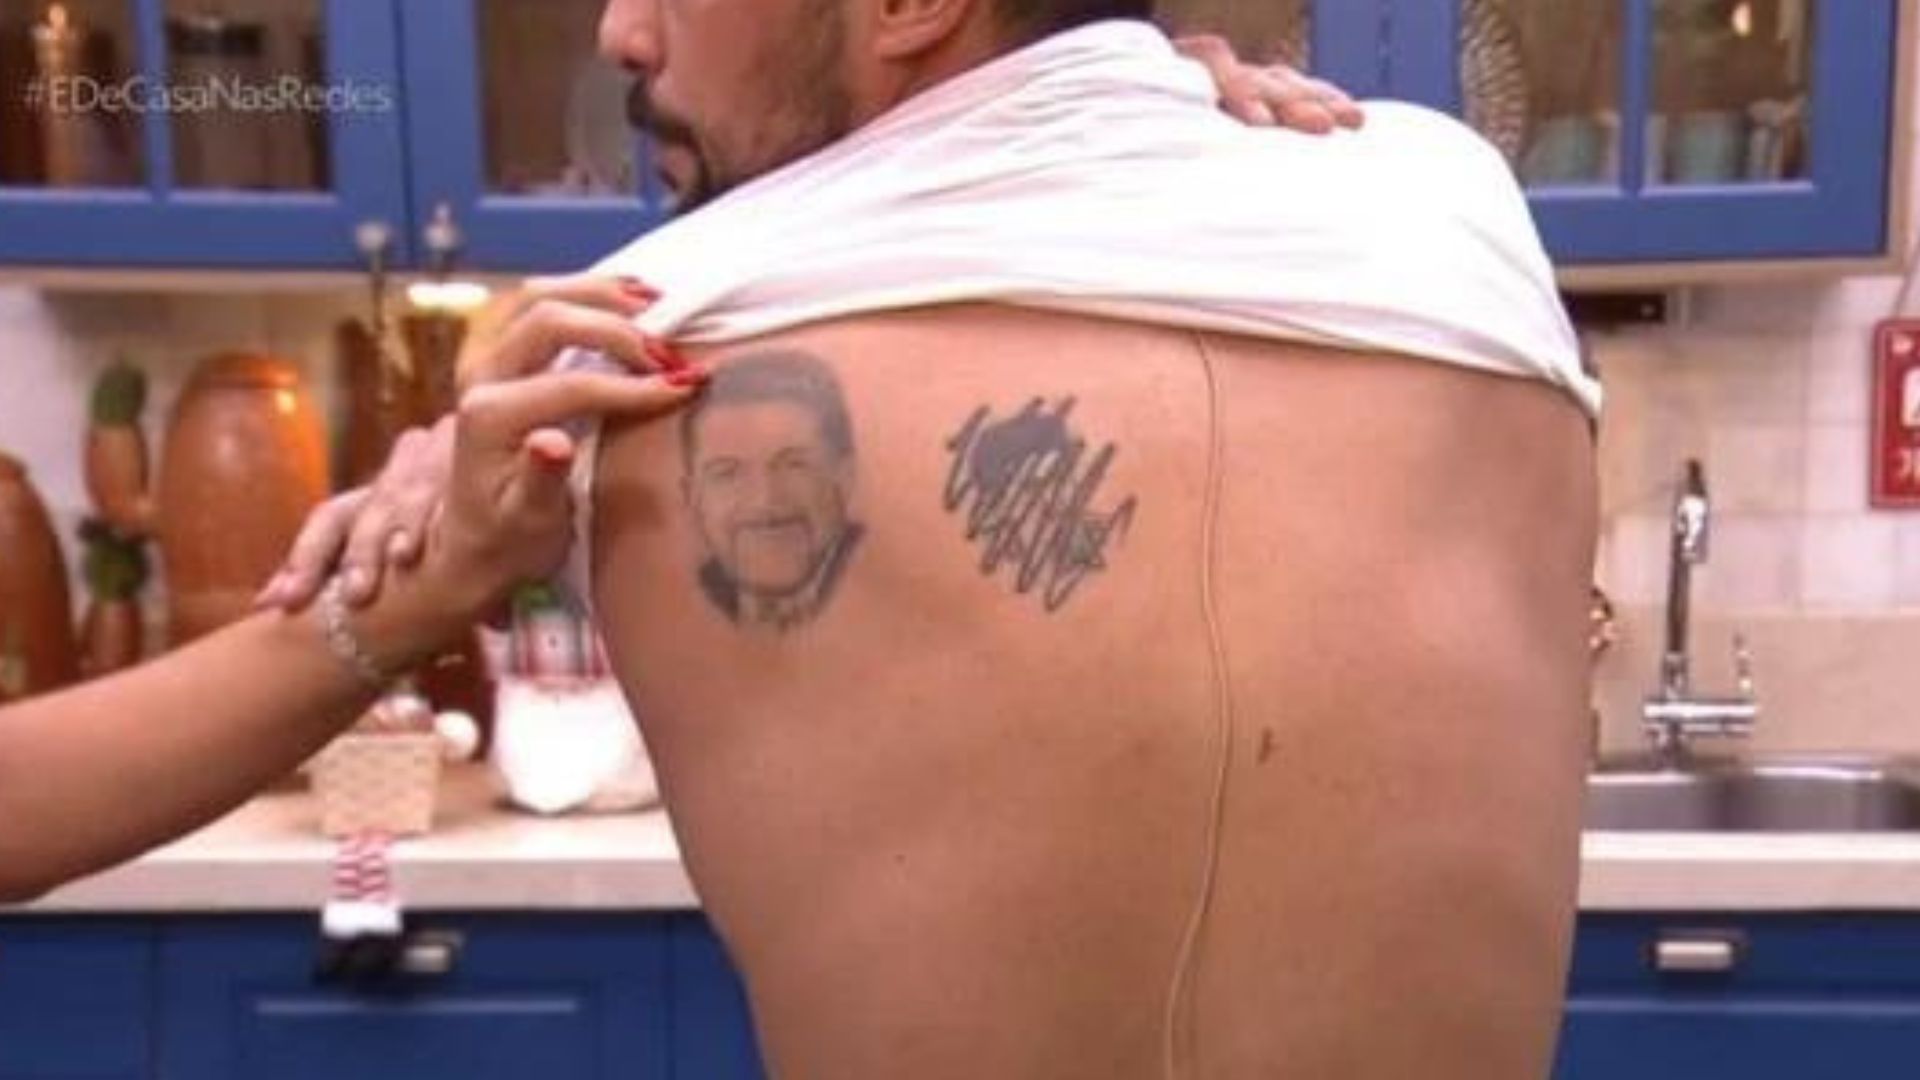 Tatuagem do Eduardo